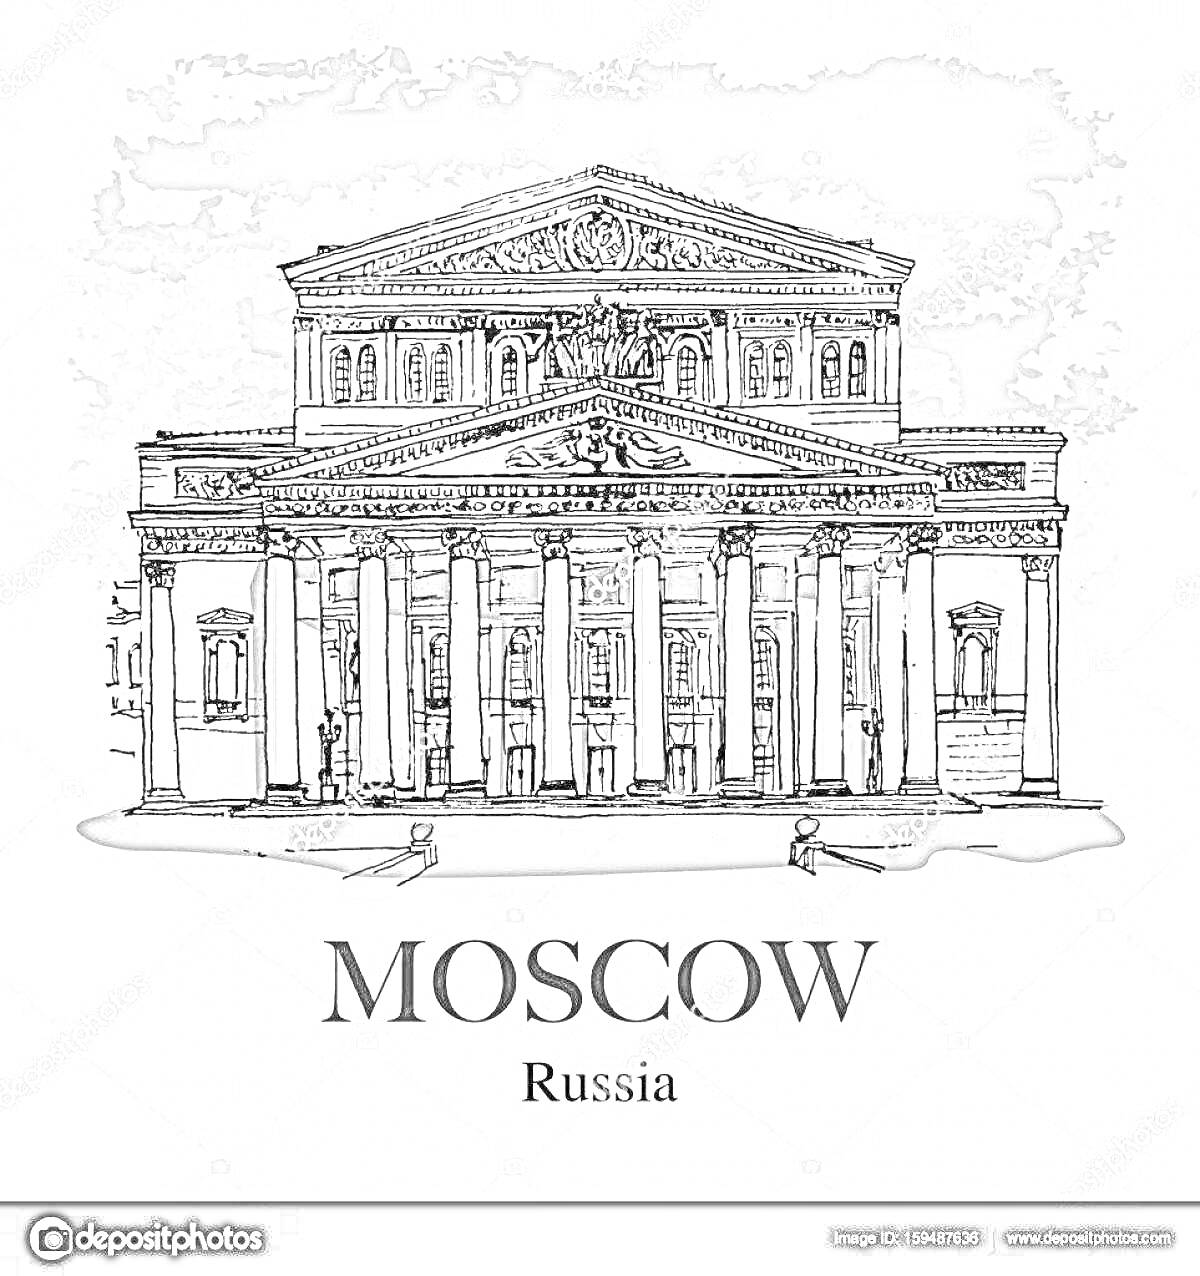 Большой театр в Москве, Russia, рисунок фасада с колоннами и скульптурами на фронтоне